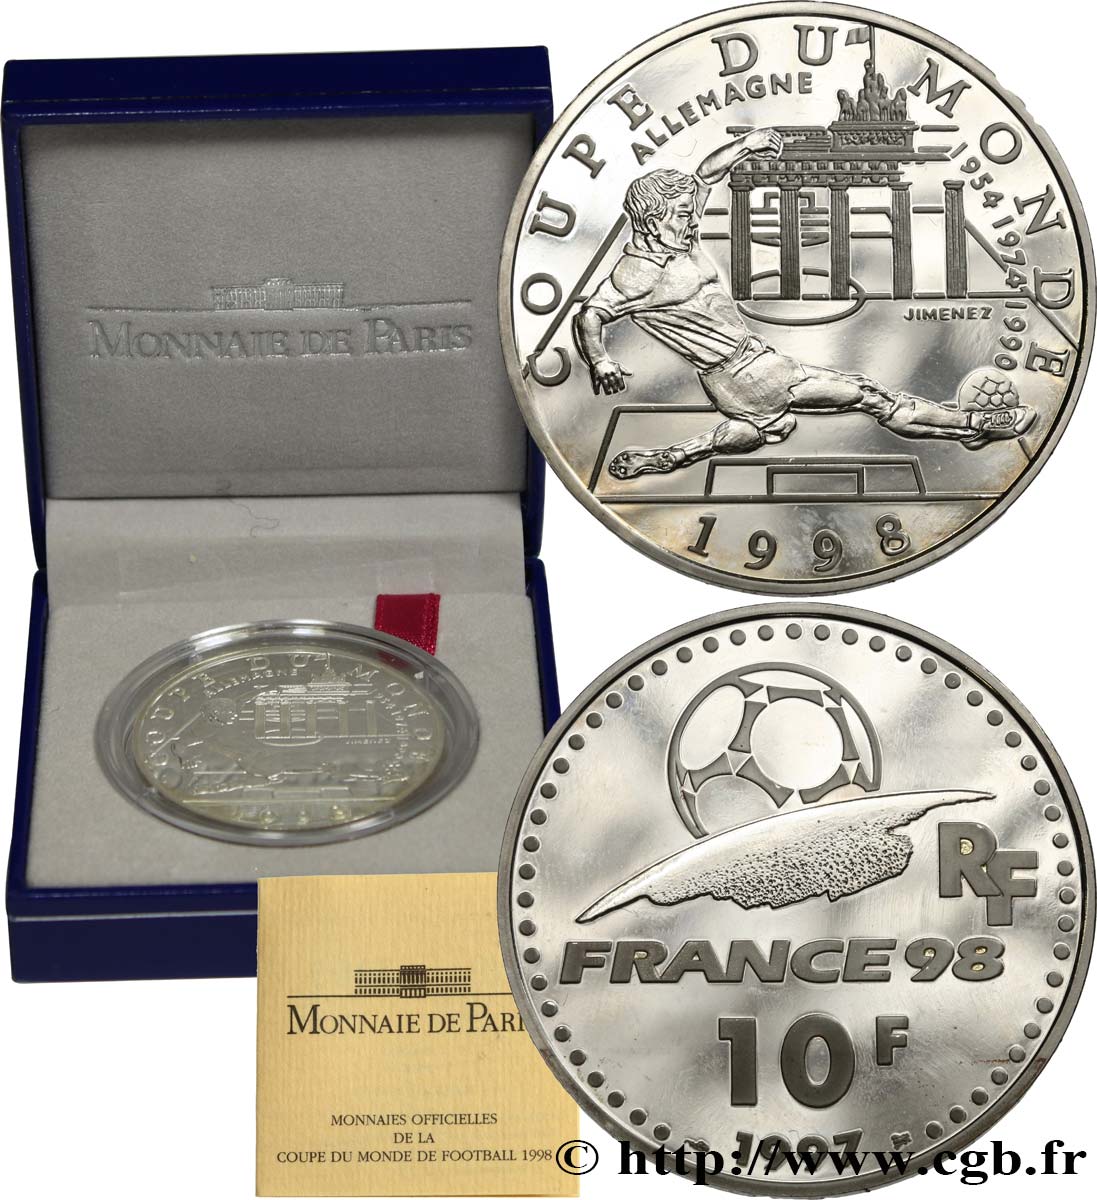 Belle Épreuve 10 francs - Allemagne 1997 Paris F5.1308 1 SPL 